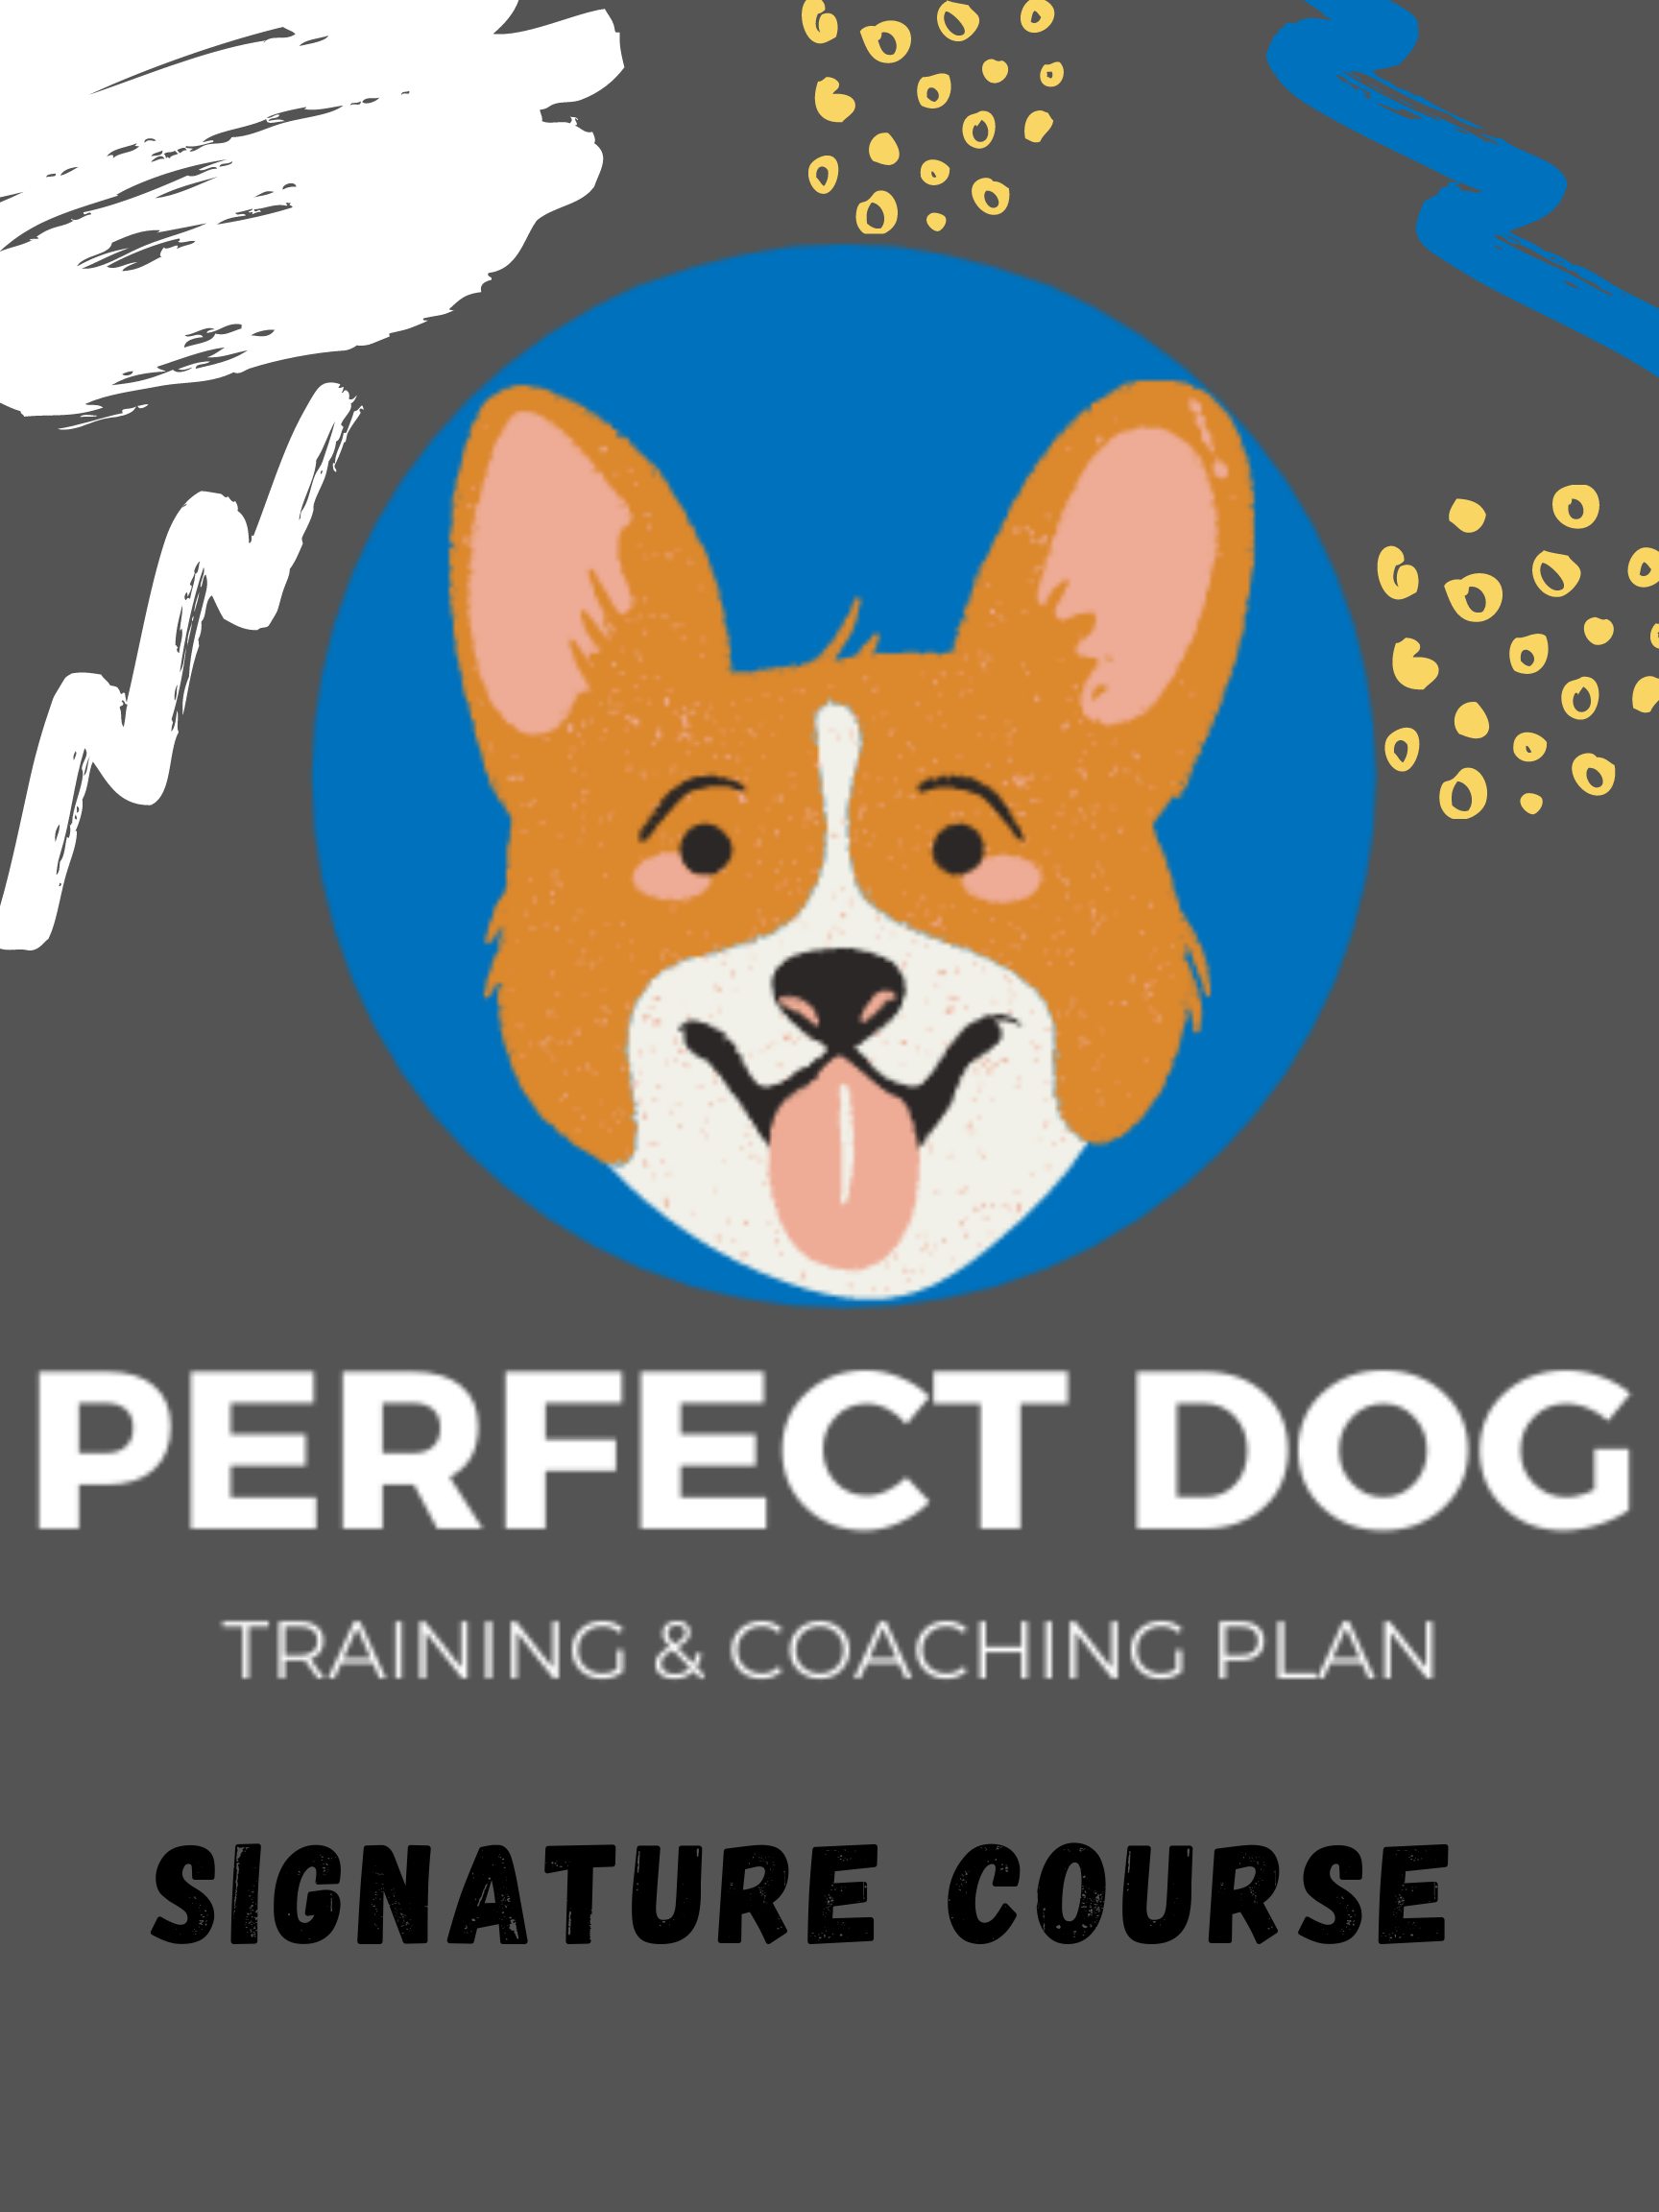 Dog training without treats